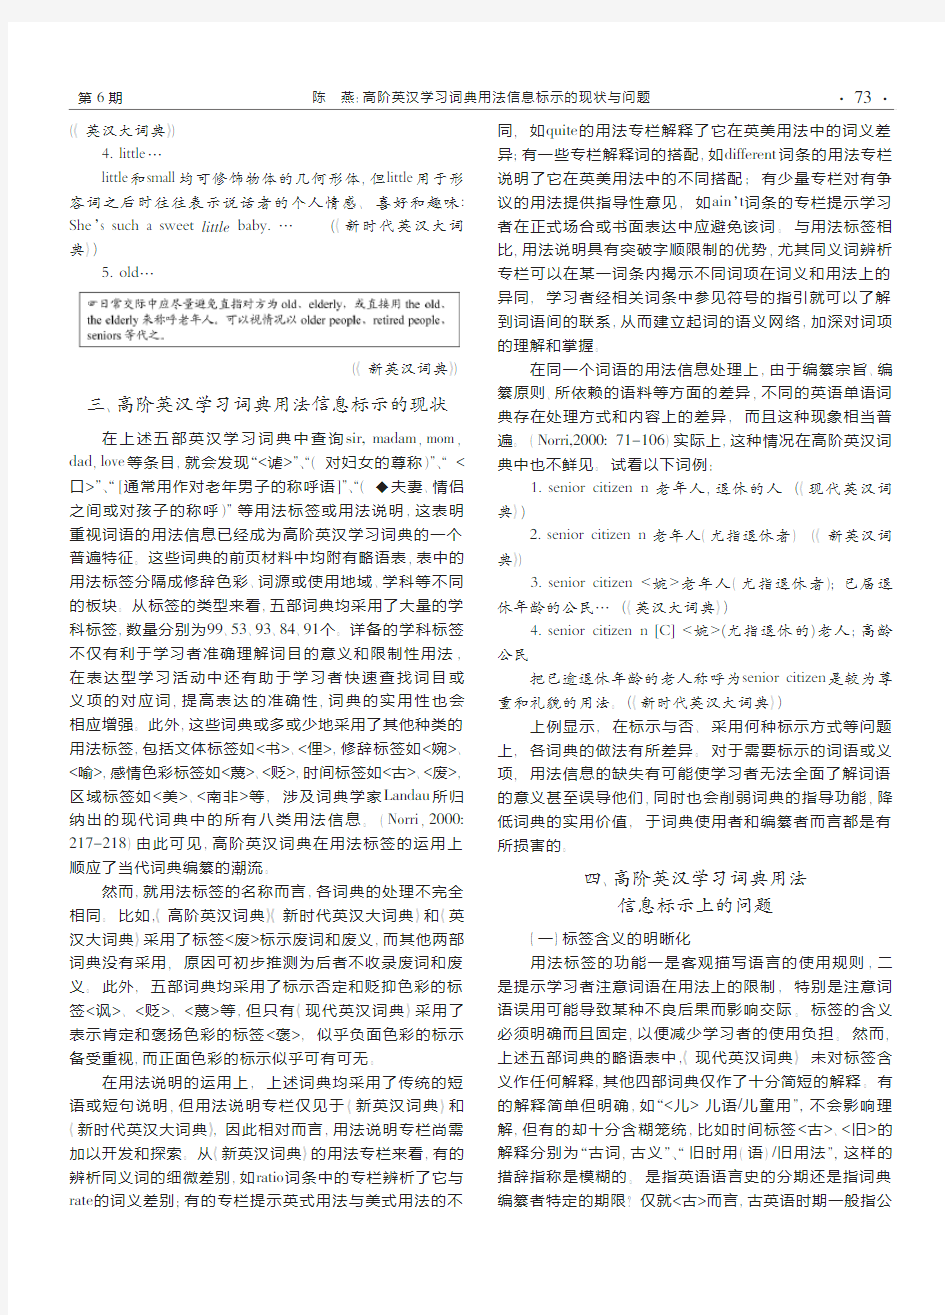 高阶英汉学习词典用法信息标示的现状与问题